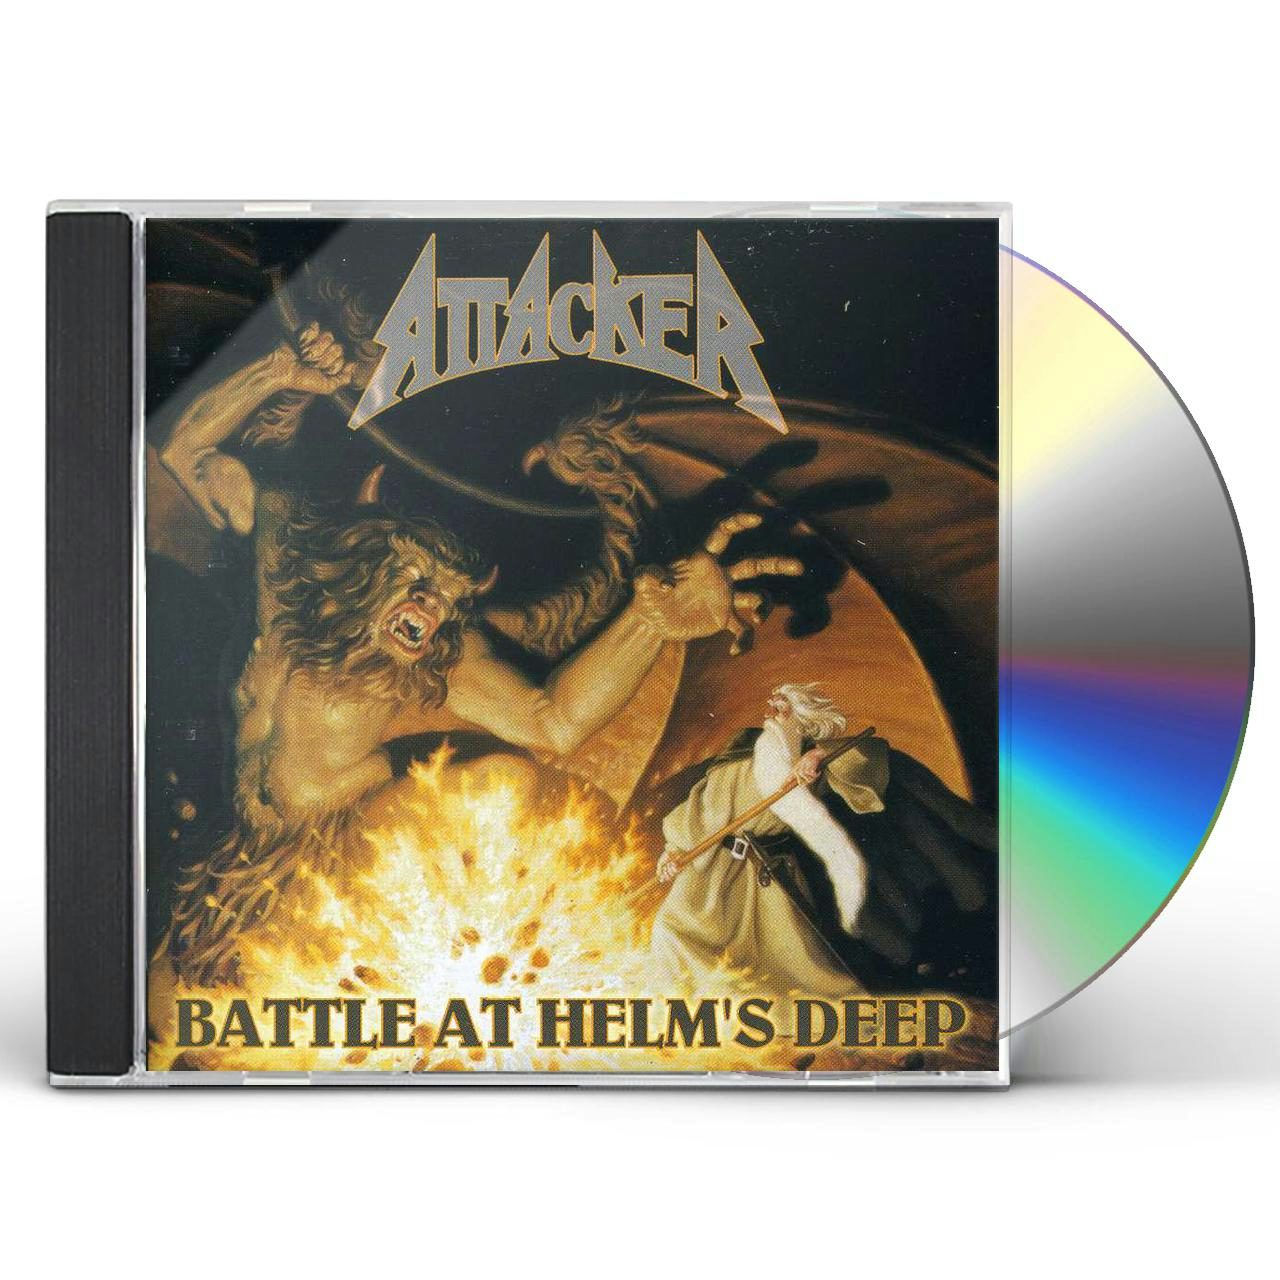 Attacker BATTLE AT HELM'S DEEP CD